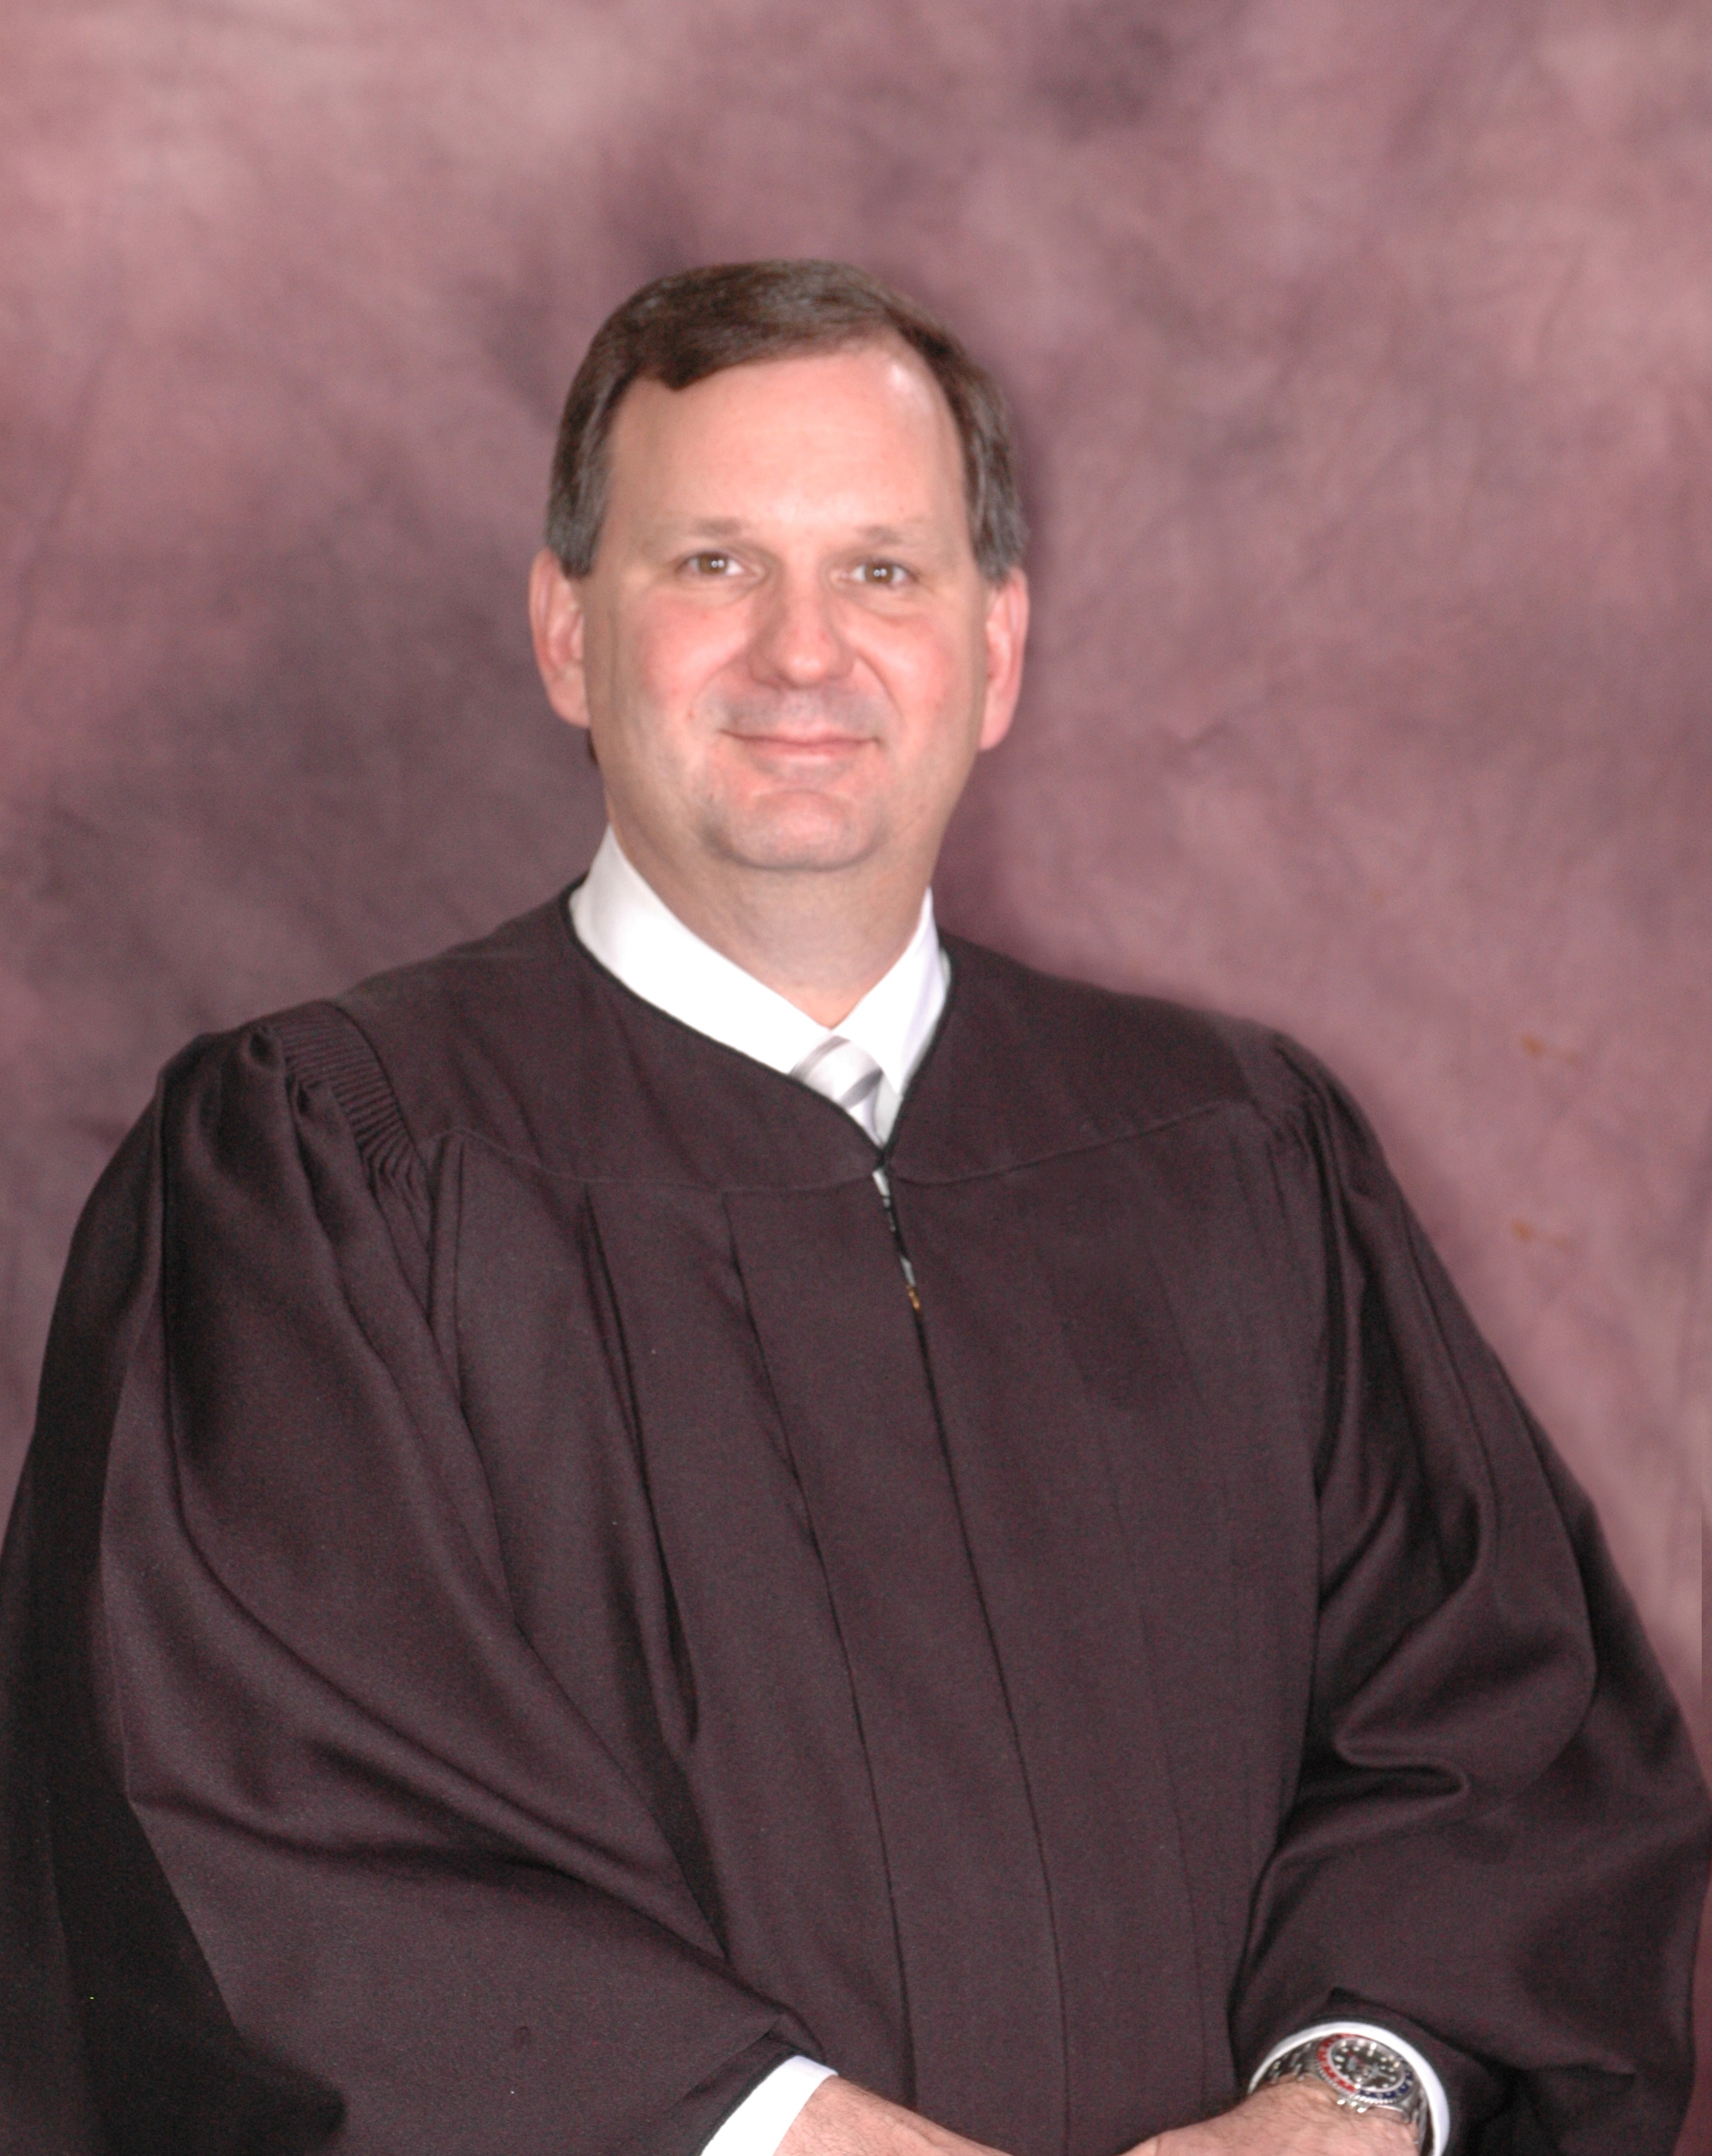 Judge Sattler